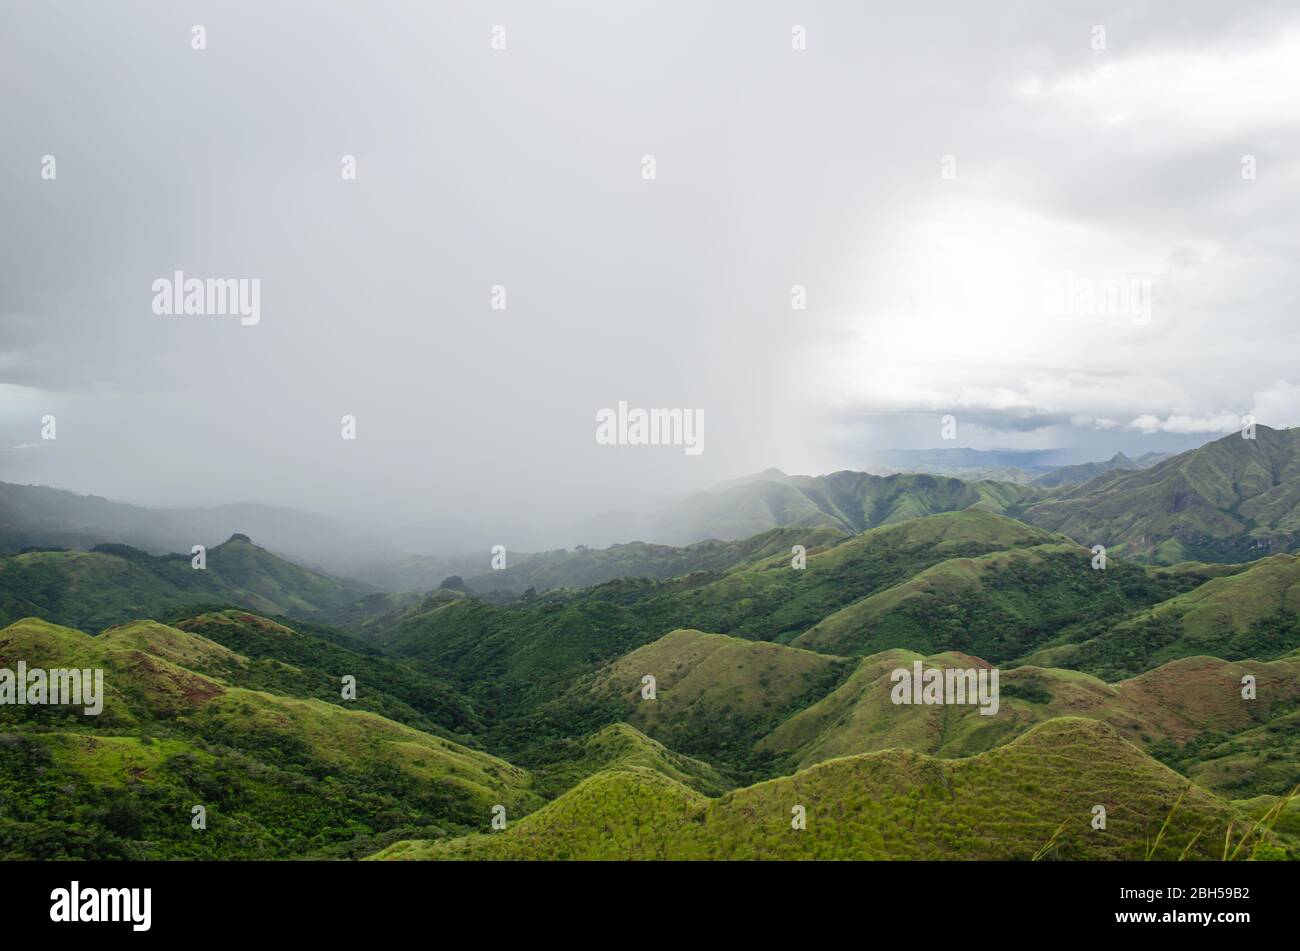 Faszinierende Berglandschaft in Zentral-Panama, mit dichten Wolken, die den Himmel umhüllen und sanftem Regen, der über die grünen Hügel fällt. Stockfoto